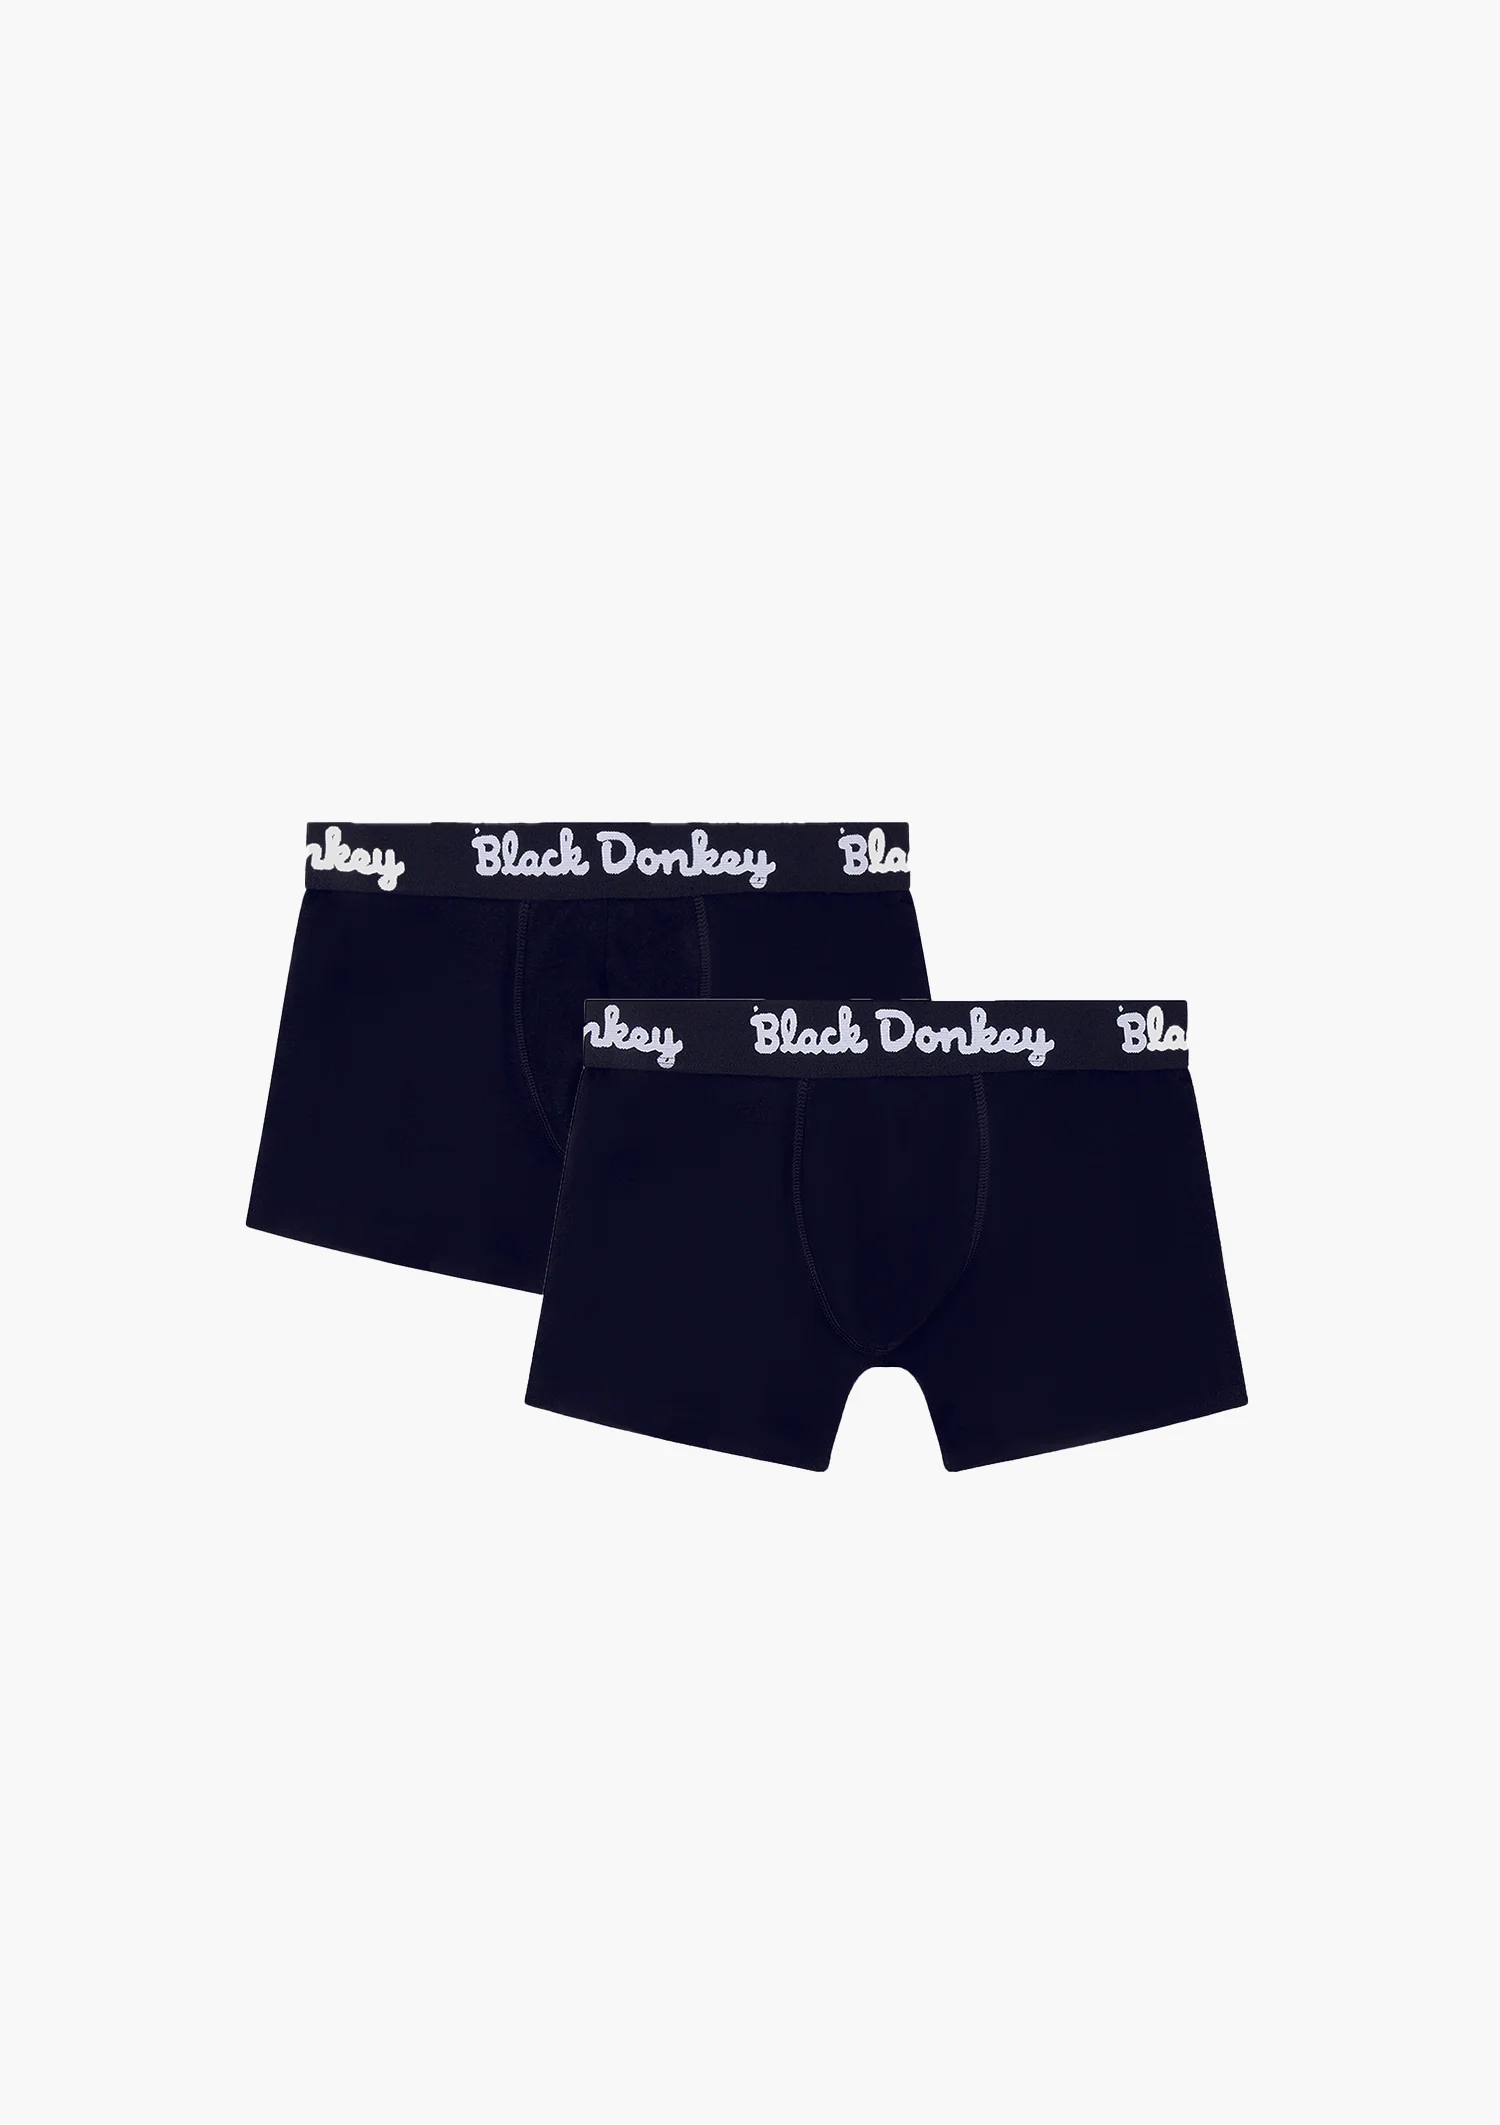 Afbeelding van Black Donkey Men boxer 2-pack i black/white